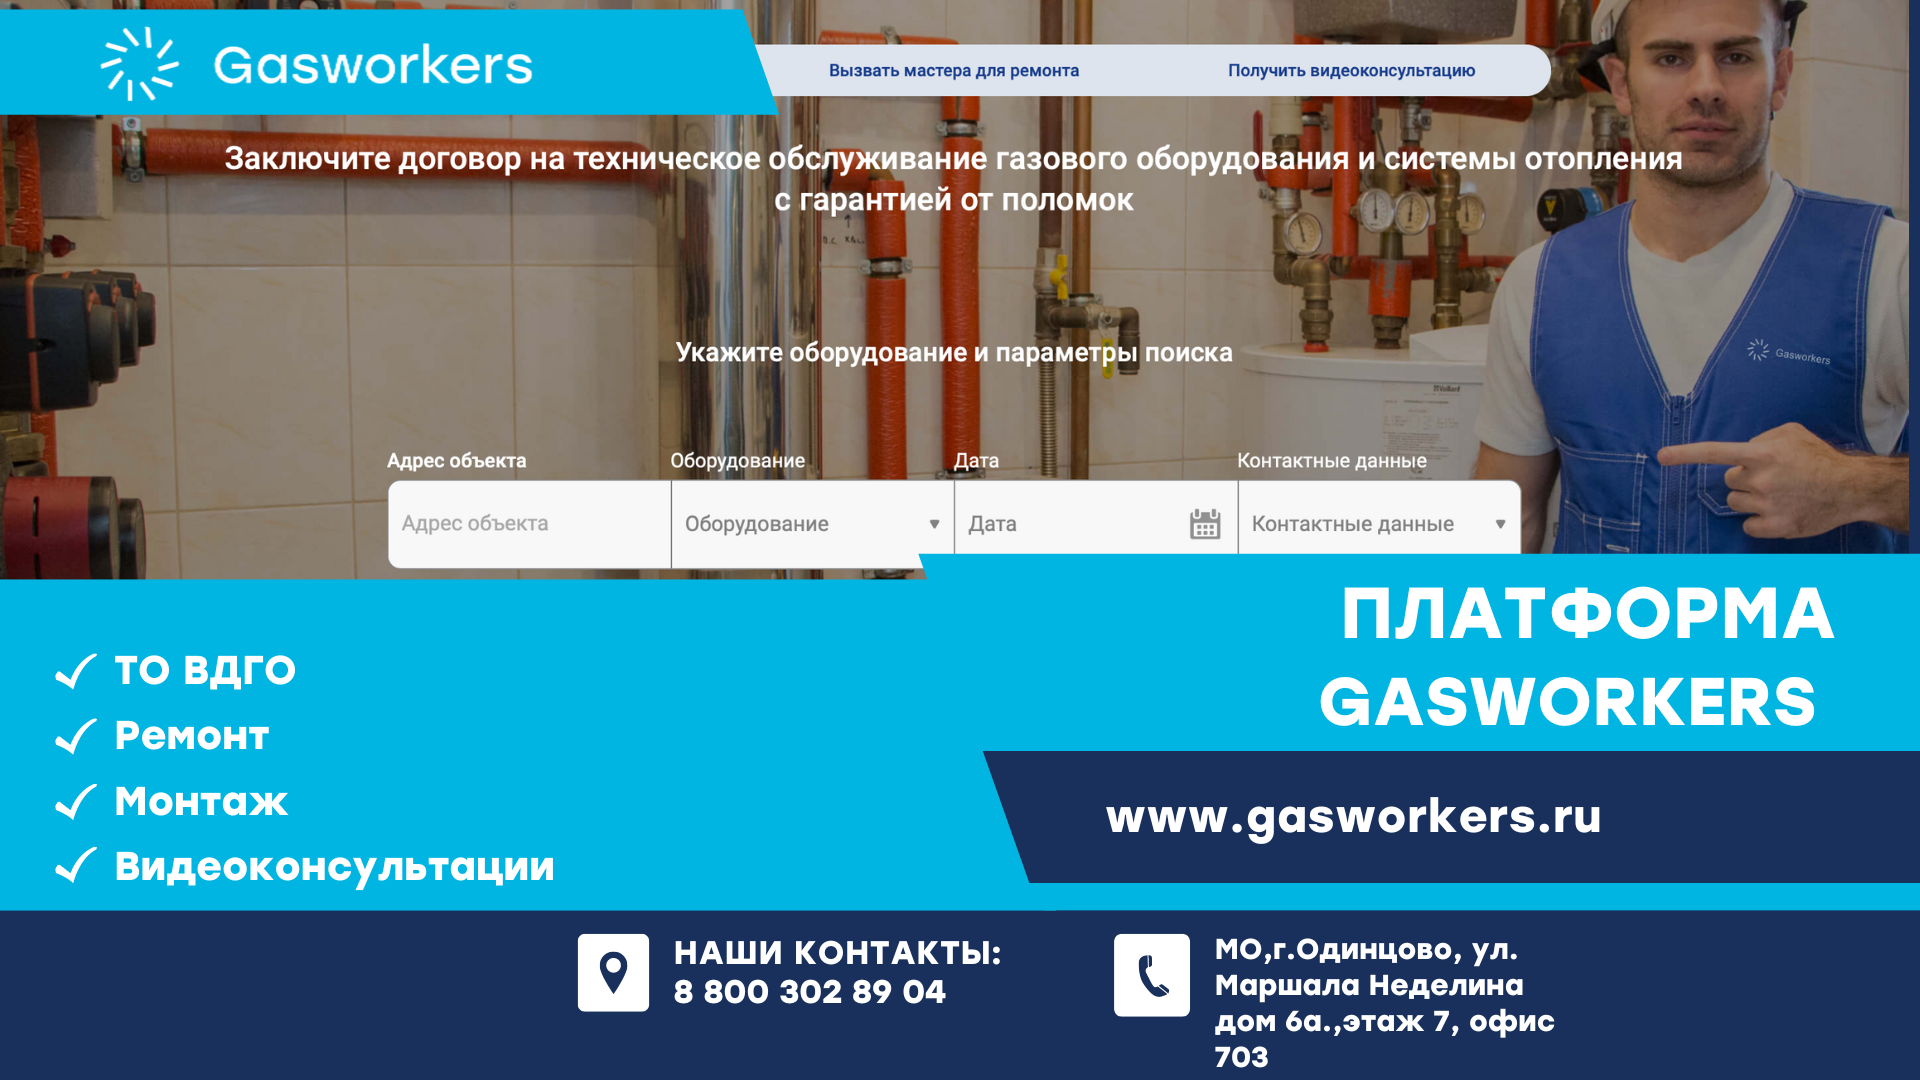 Gasworkers – платформа, которая объединила клиентов и профессионалов